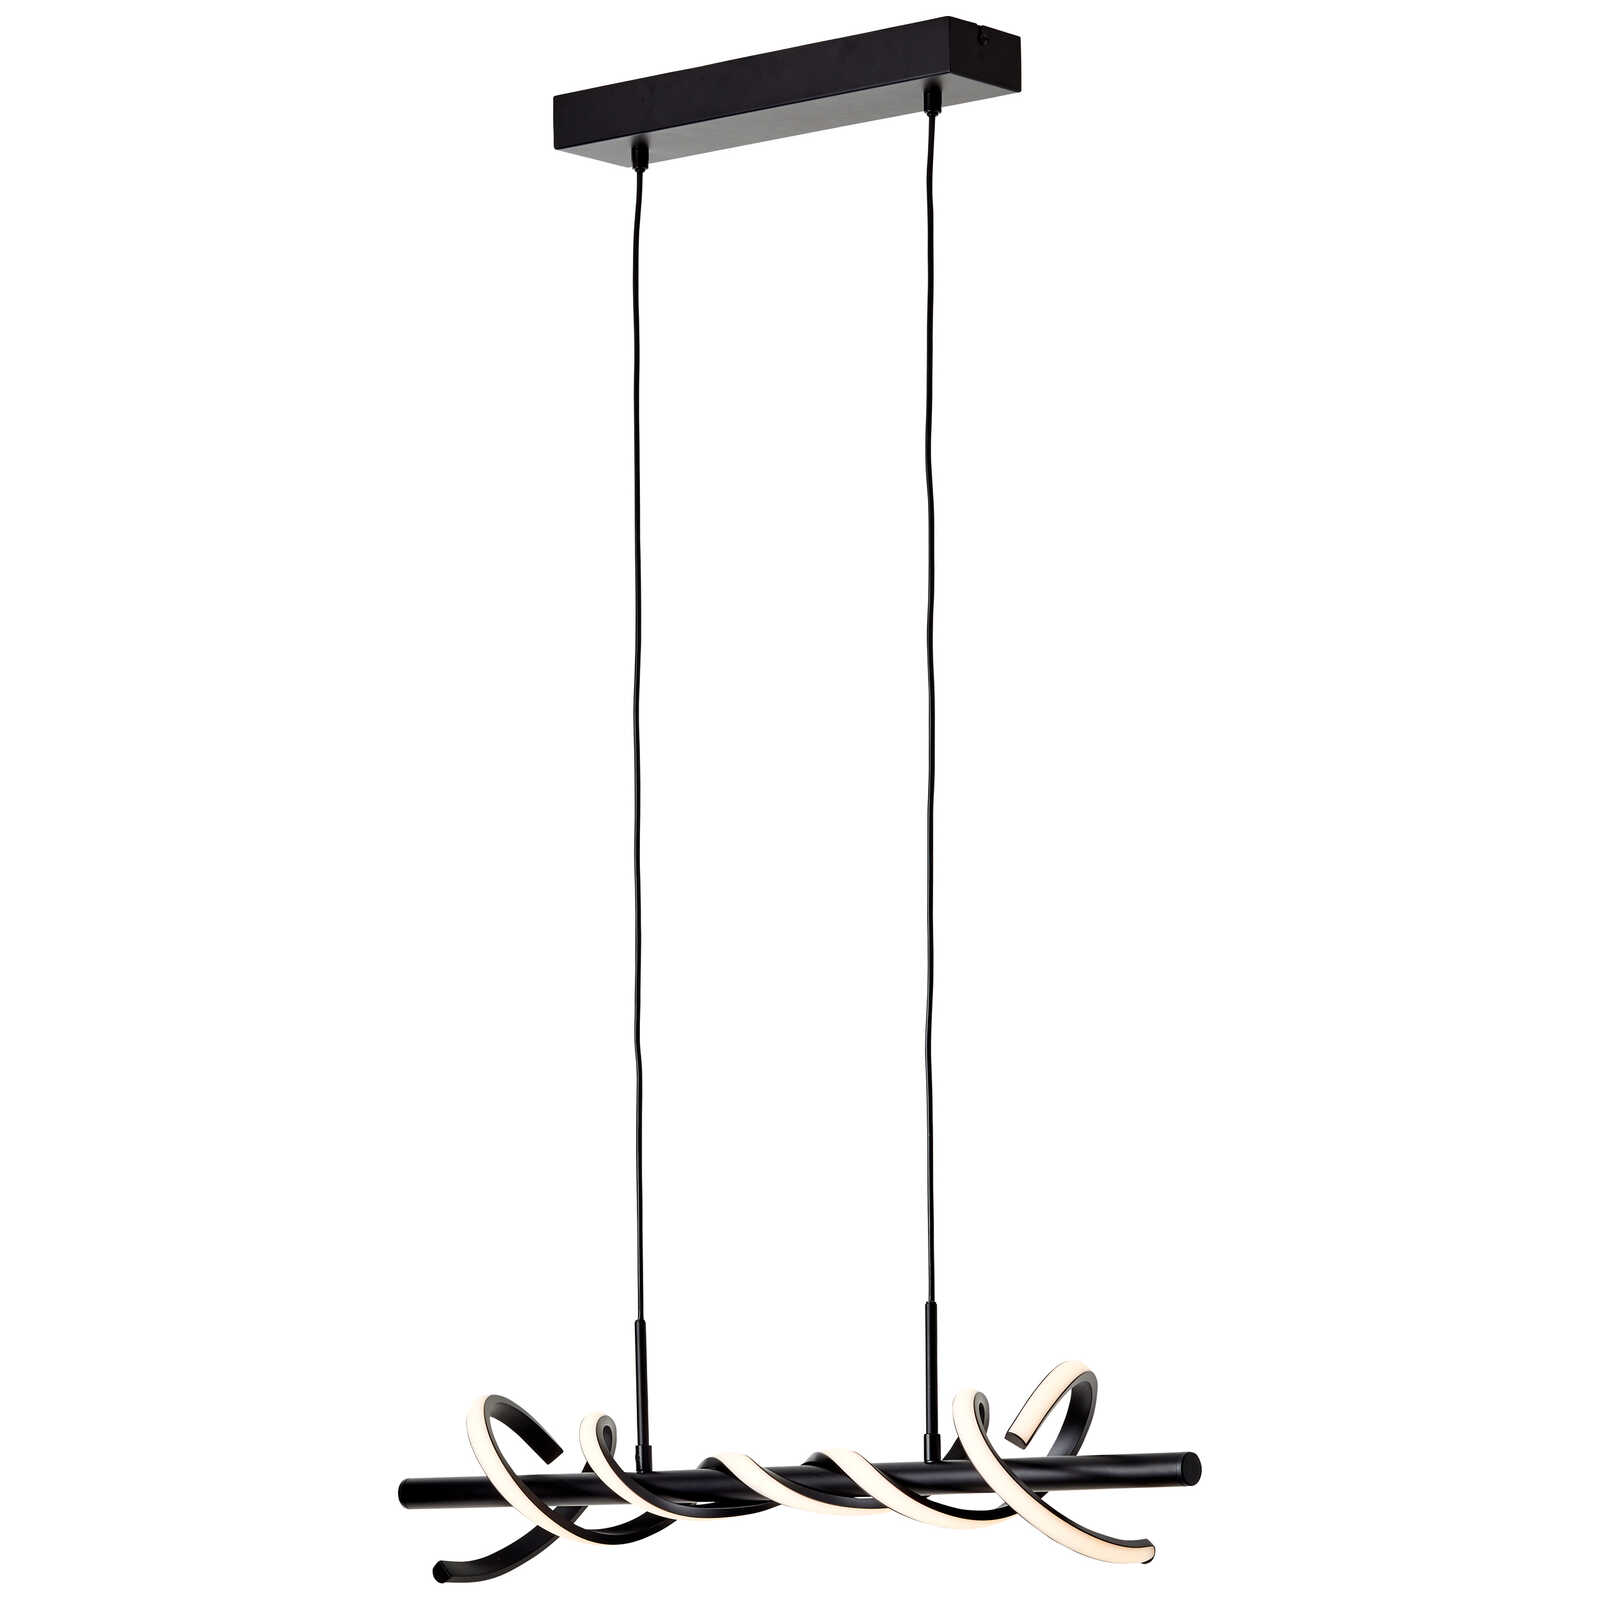             Kunststof hanglamp - Alexander 3 - Zwart
        